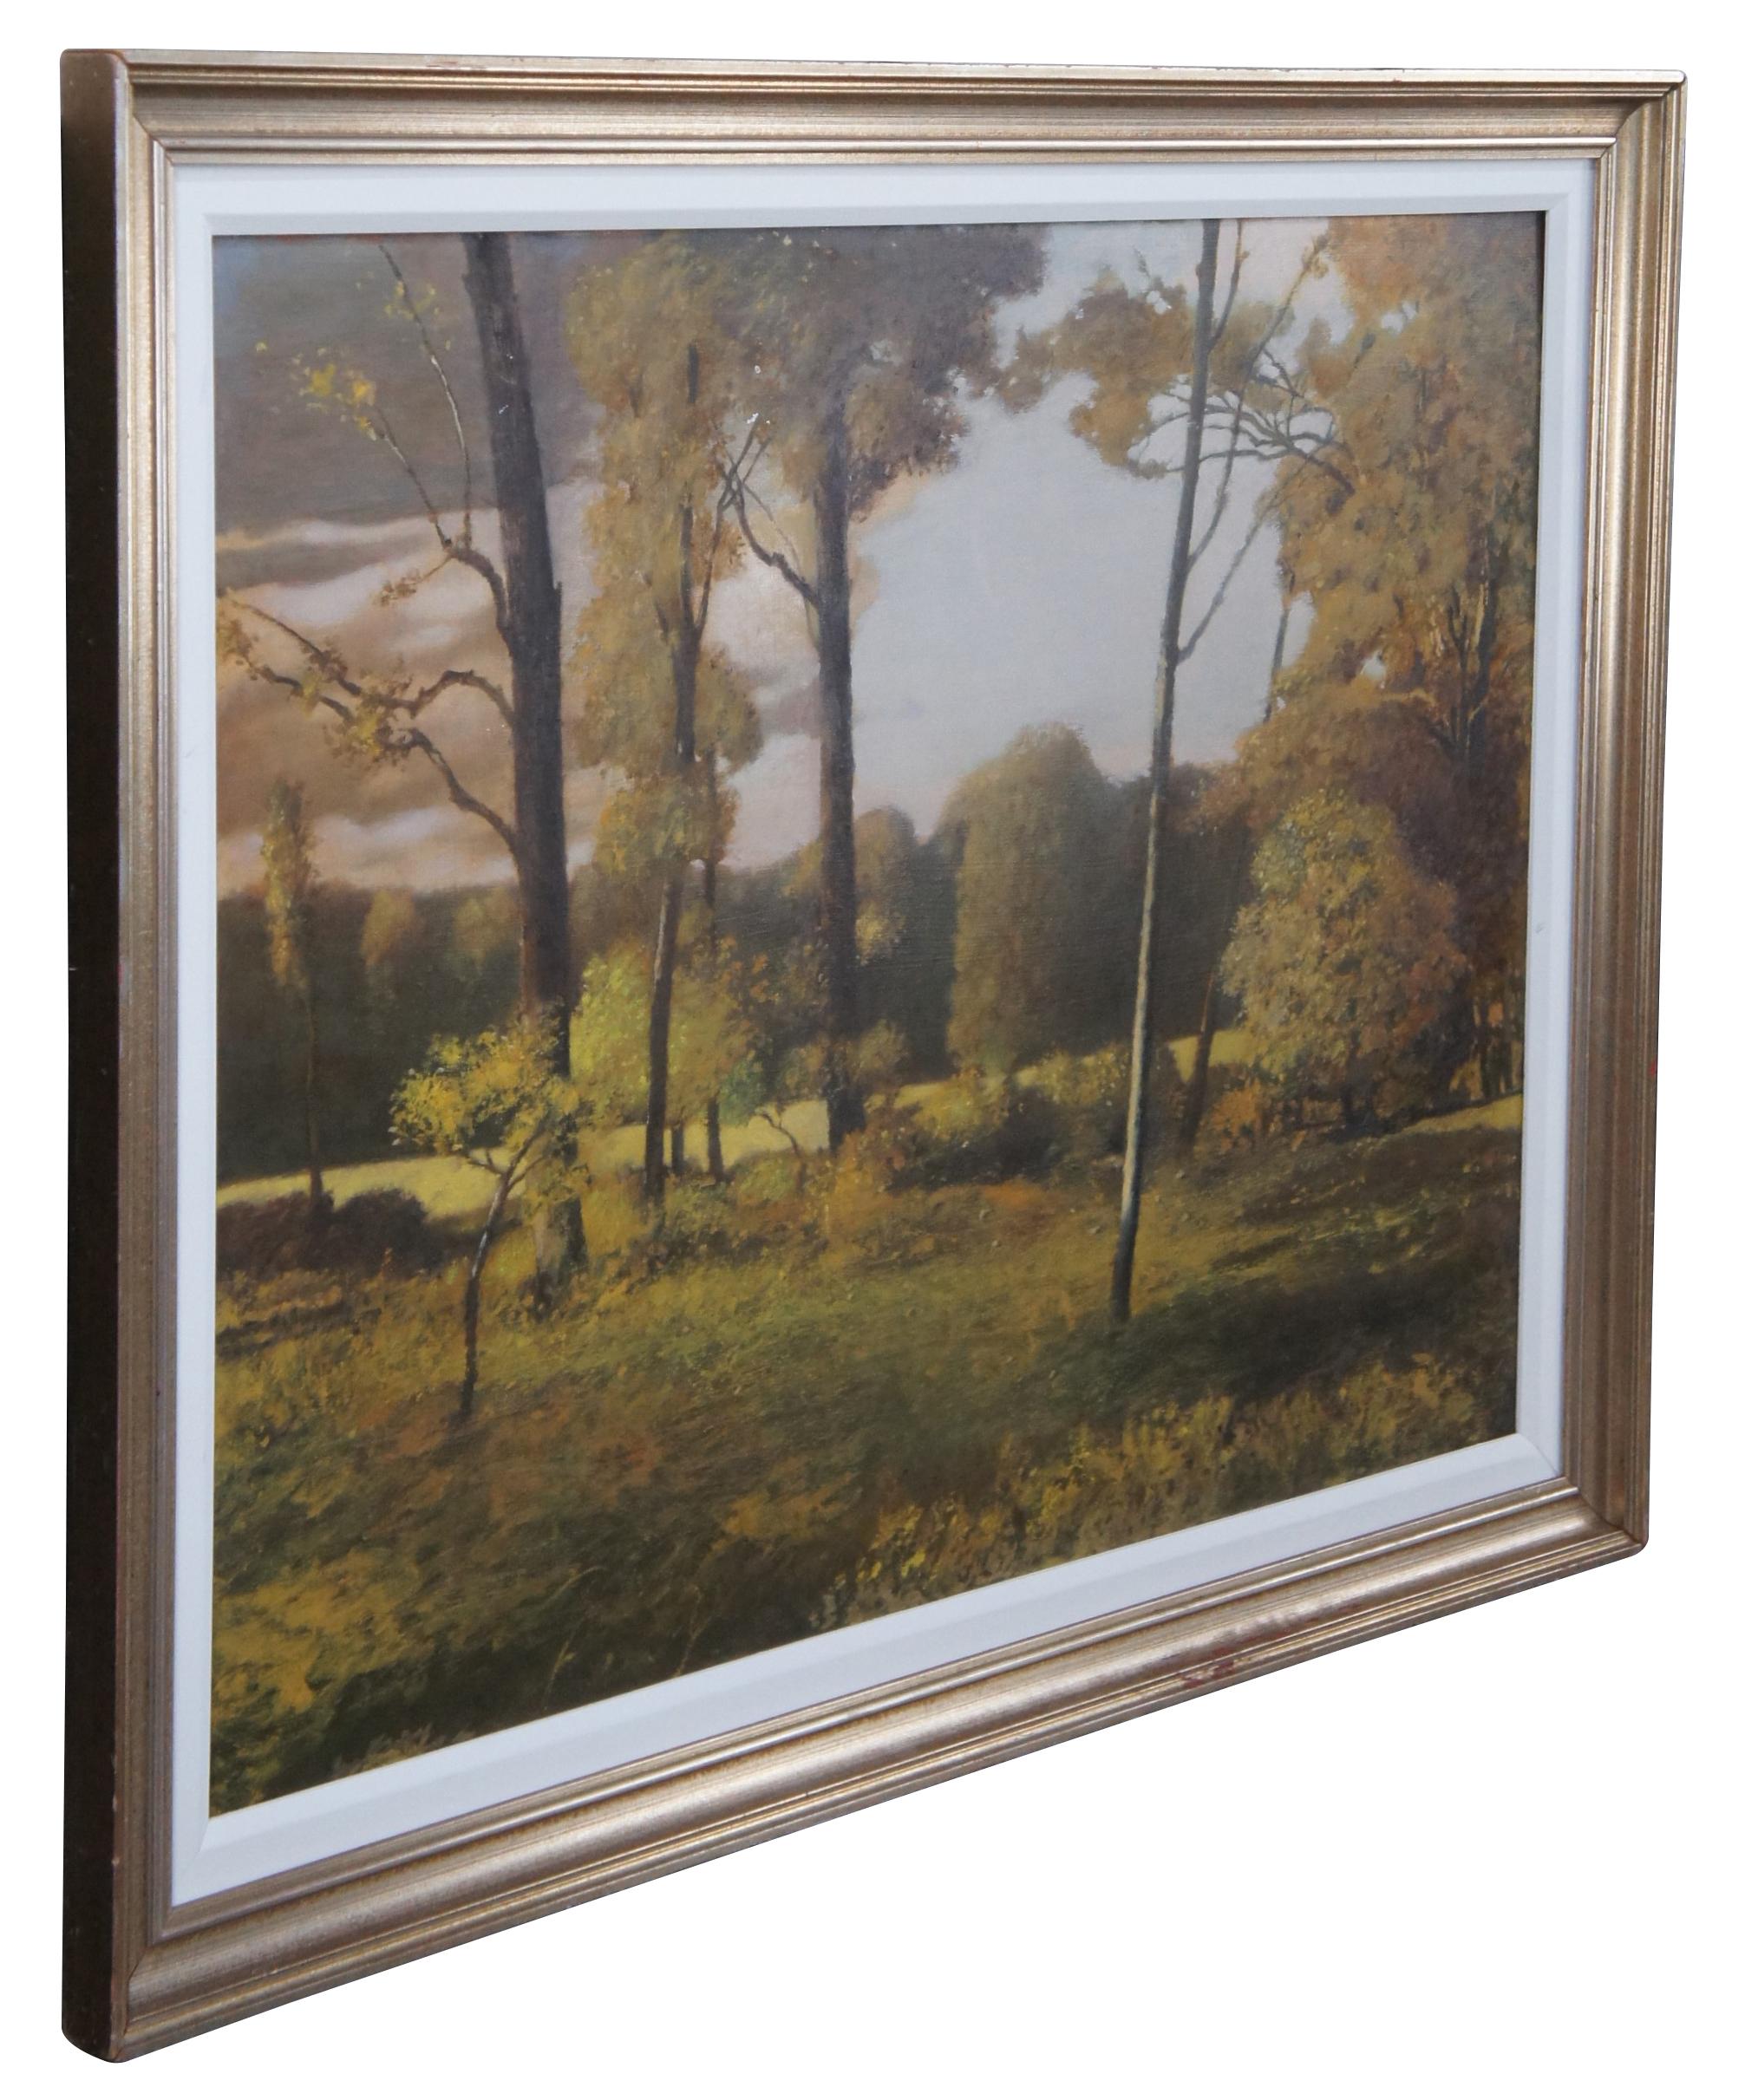 Ronald E. Renmark - Peinture à l'huile sur toile - Paysage de forêt avec arbres - 46